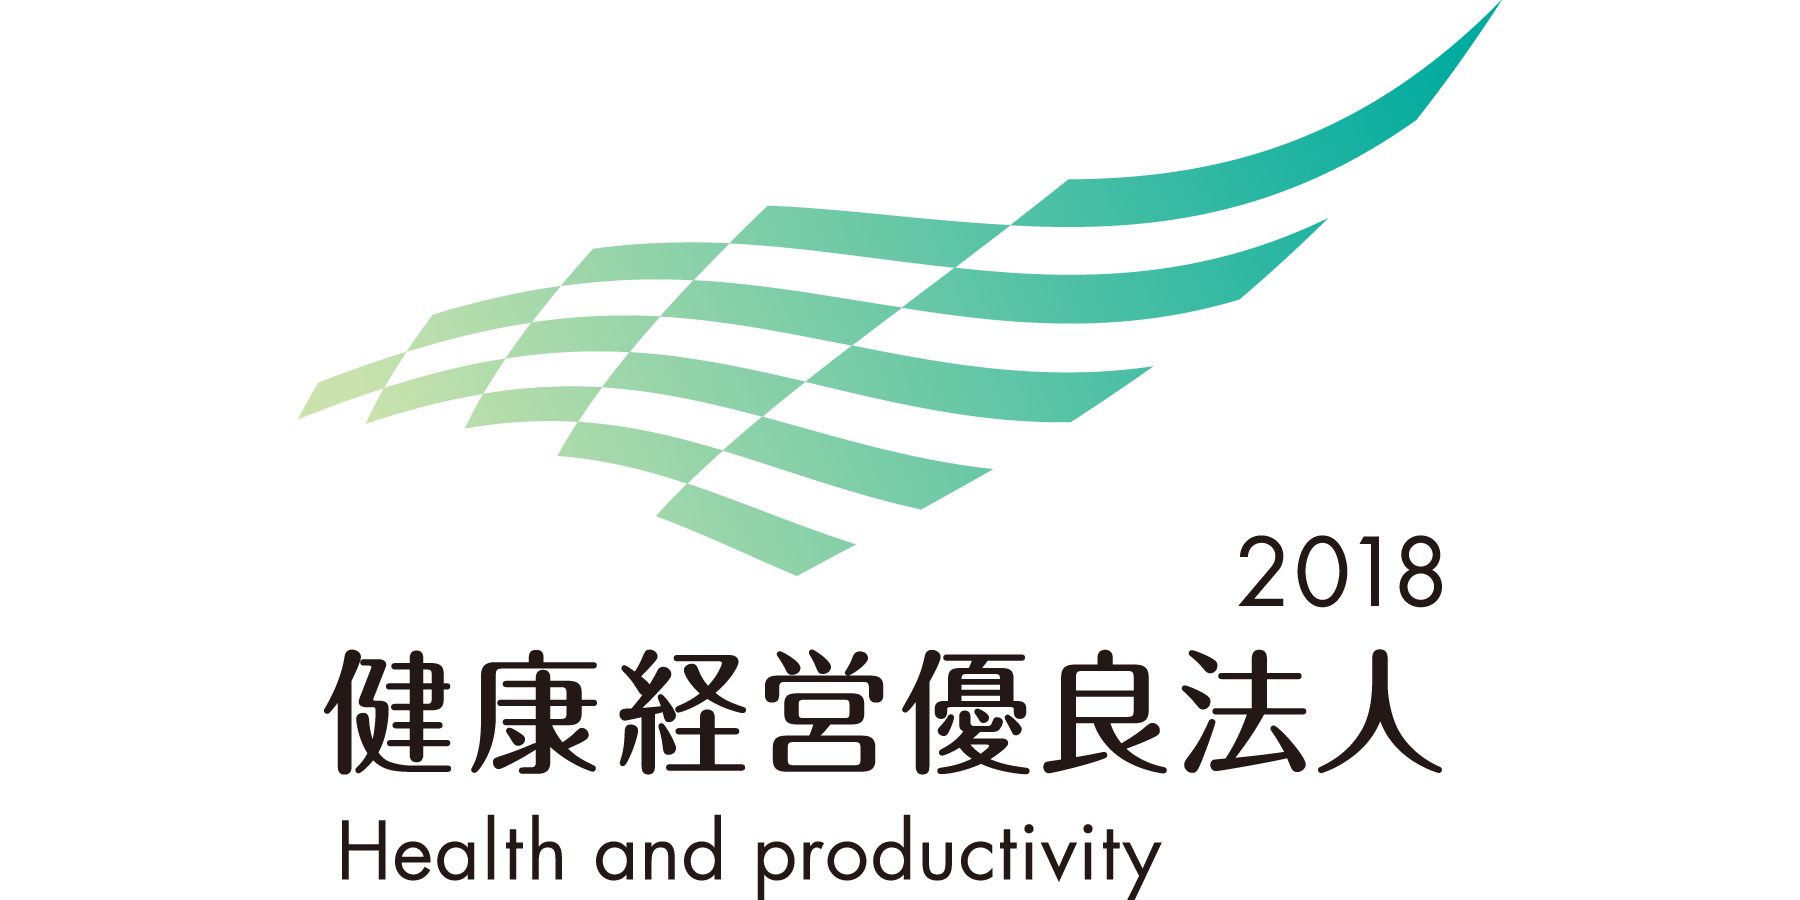 2018健康経営優良法人のロゴ